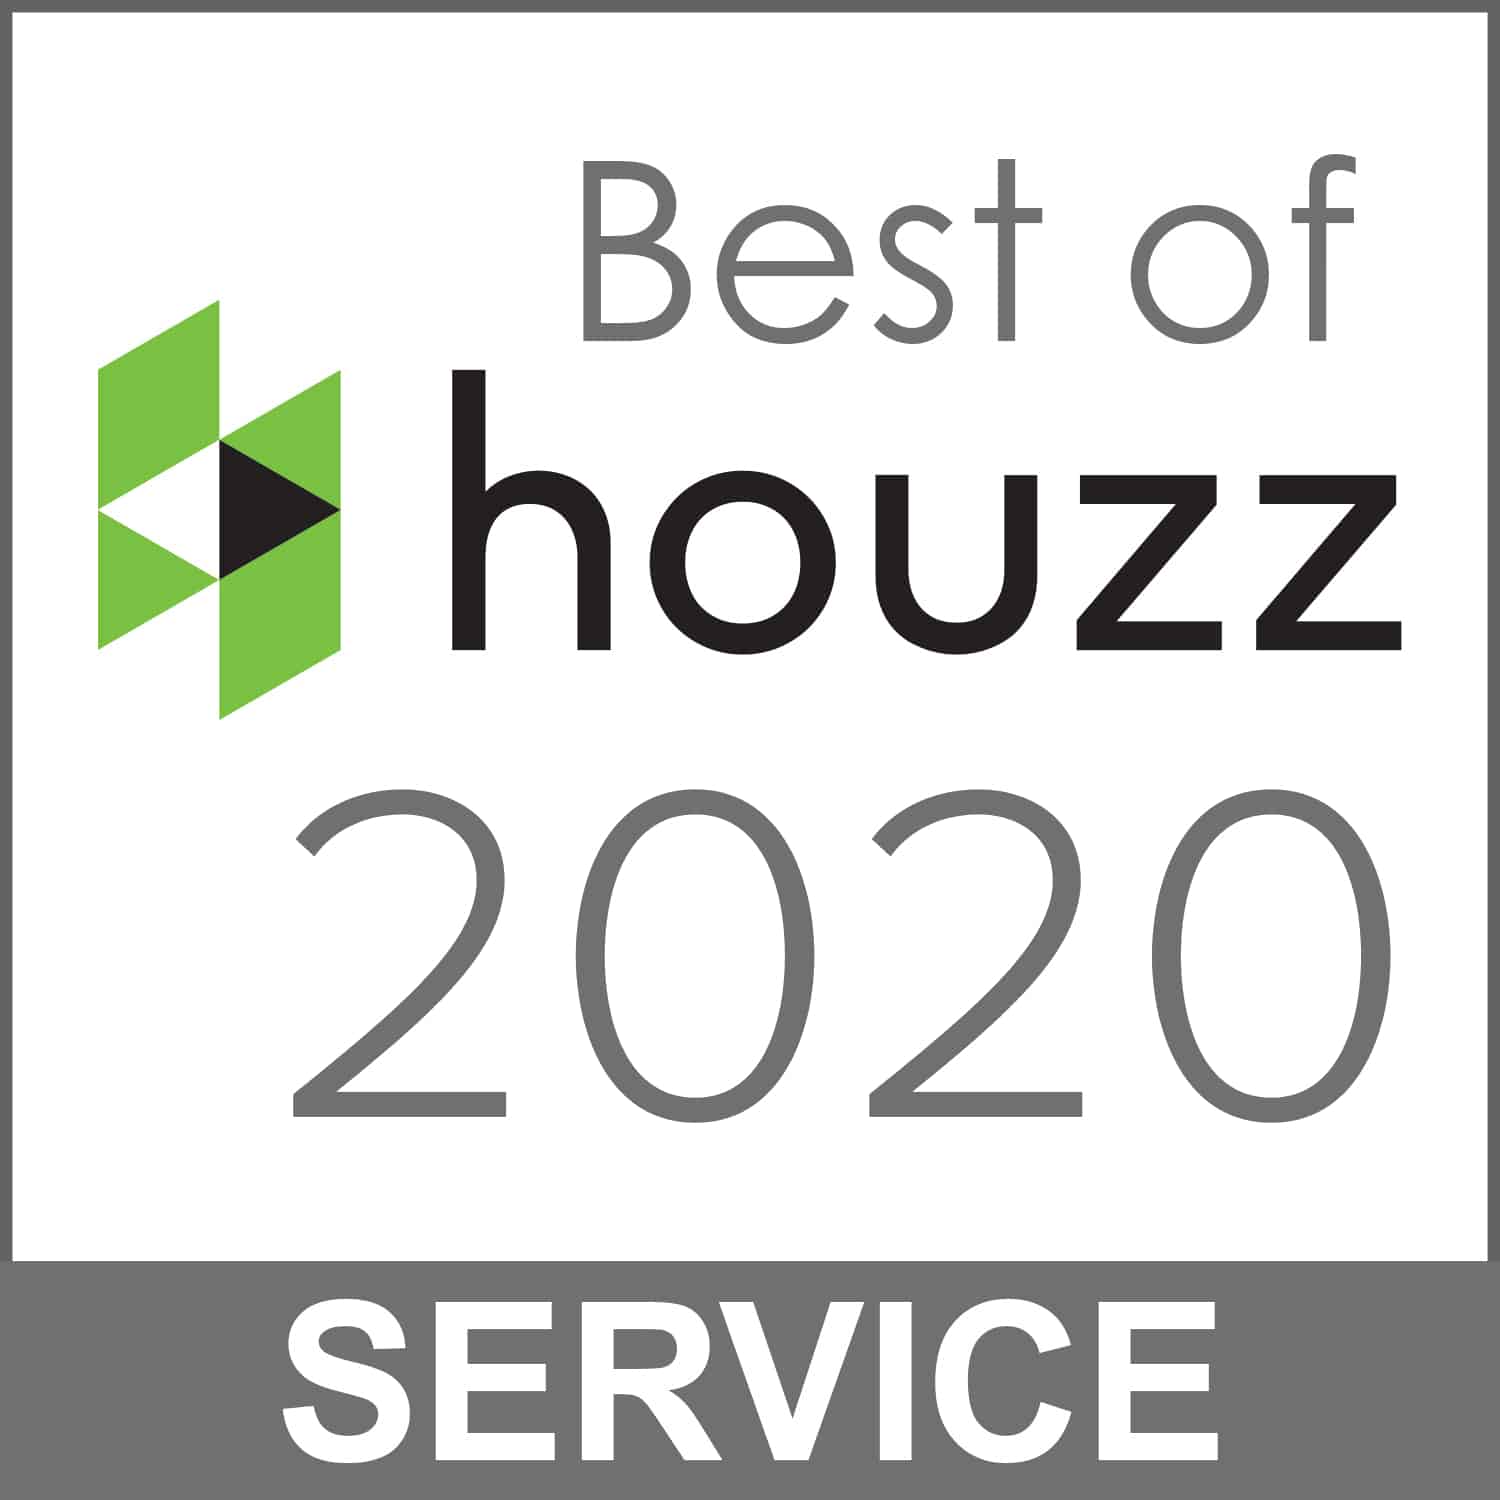 Best of houzz 2020 interior design service.